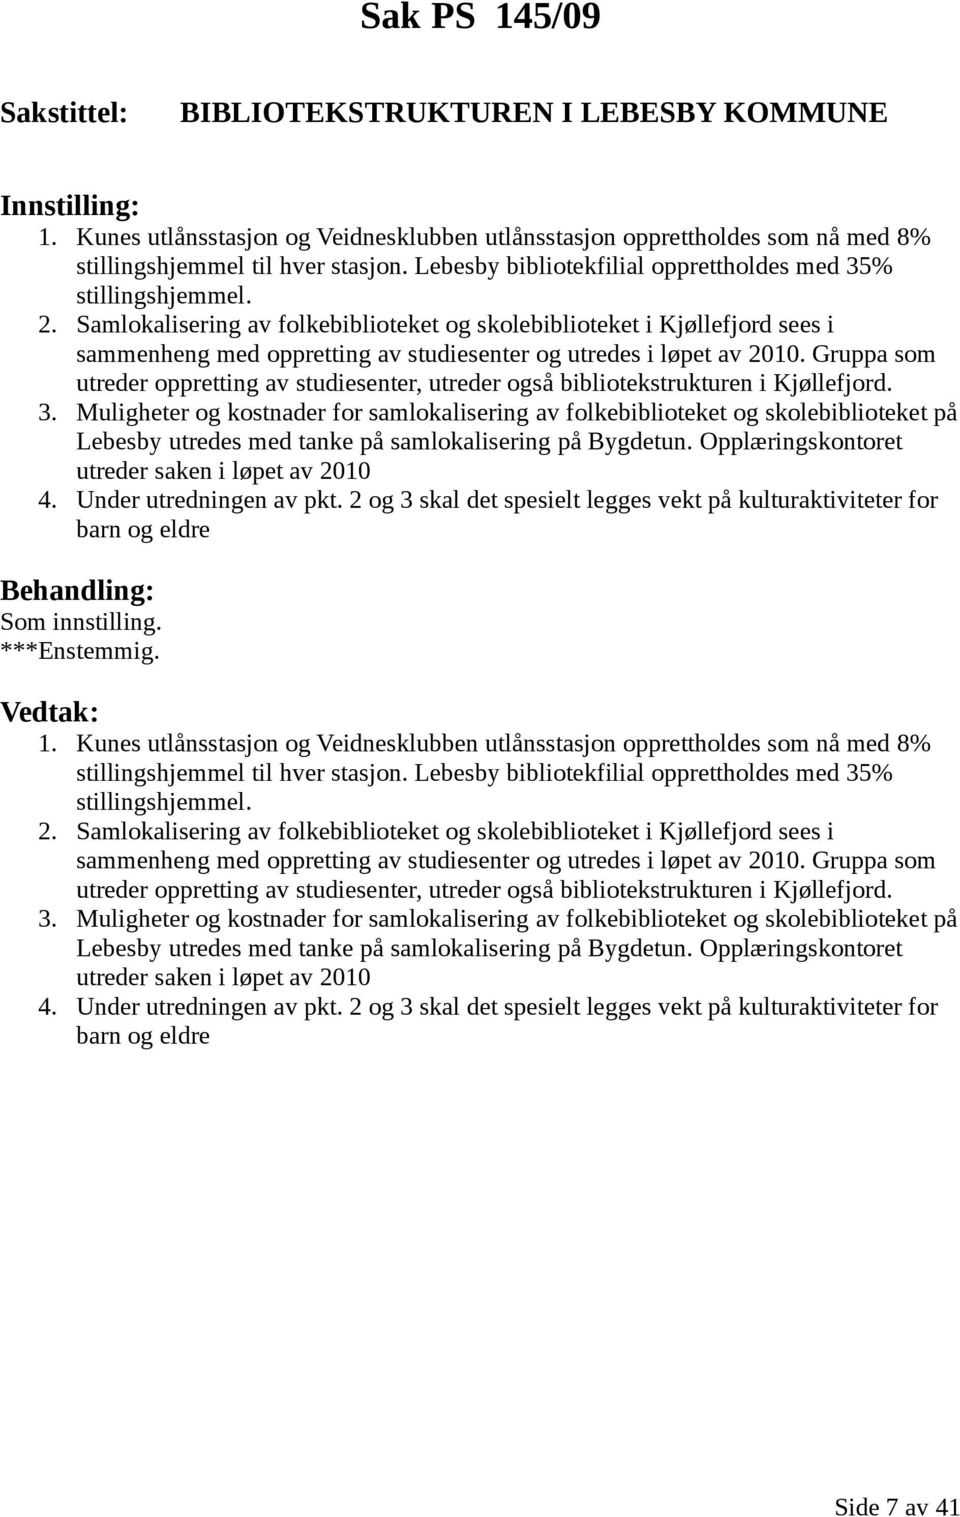 Samlokalisering av folkebiblioteket og skolebiblioteket i Kjøllefjord sees i sammenheng med oppretting av studiesenter og utredes i løpet av 2010.